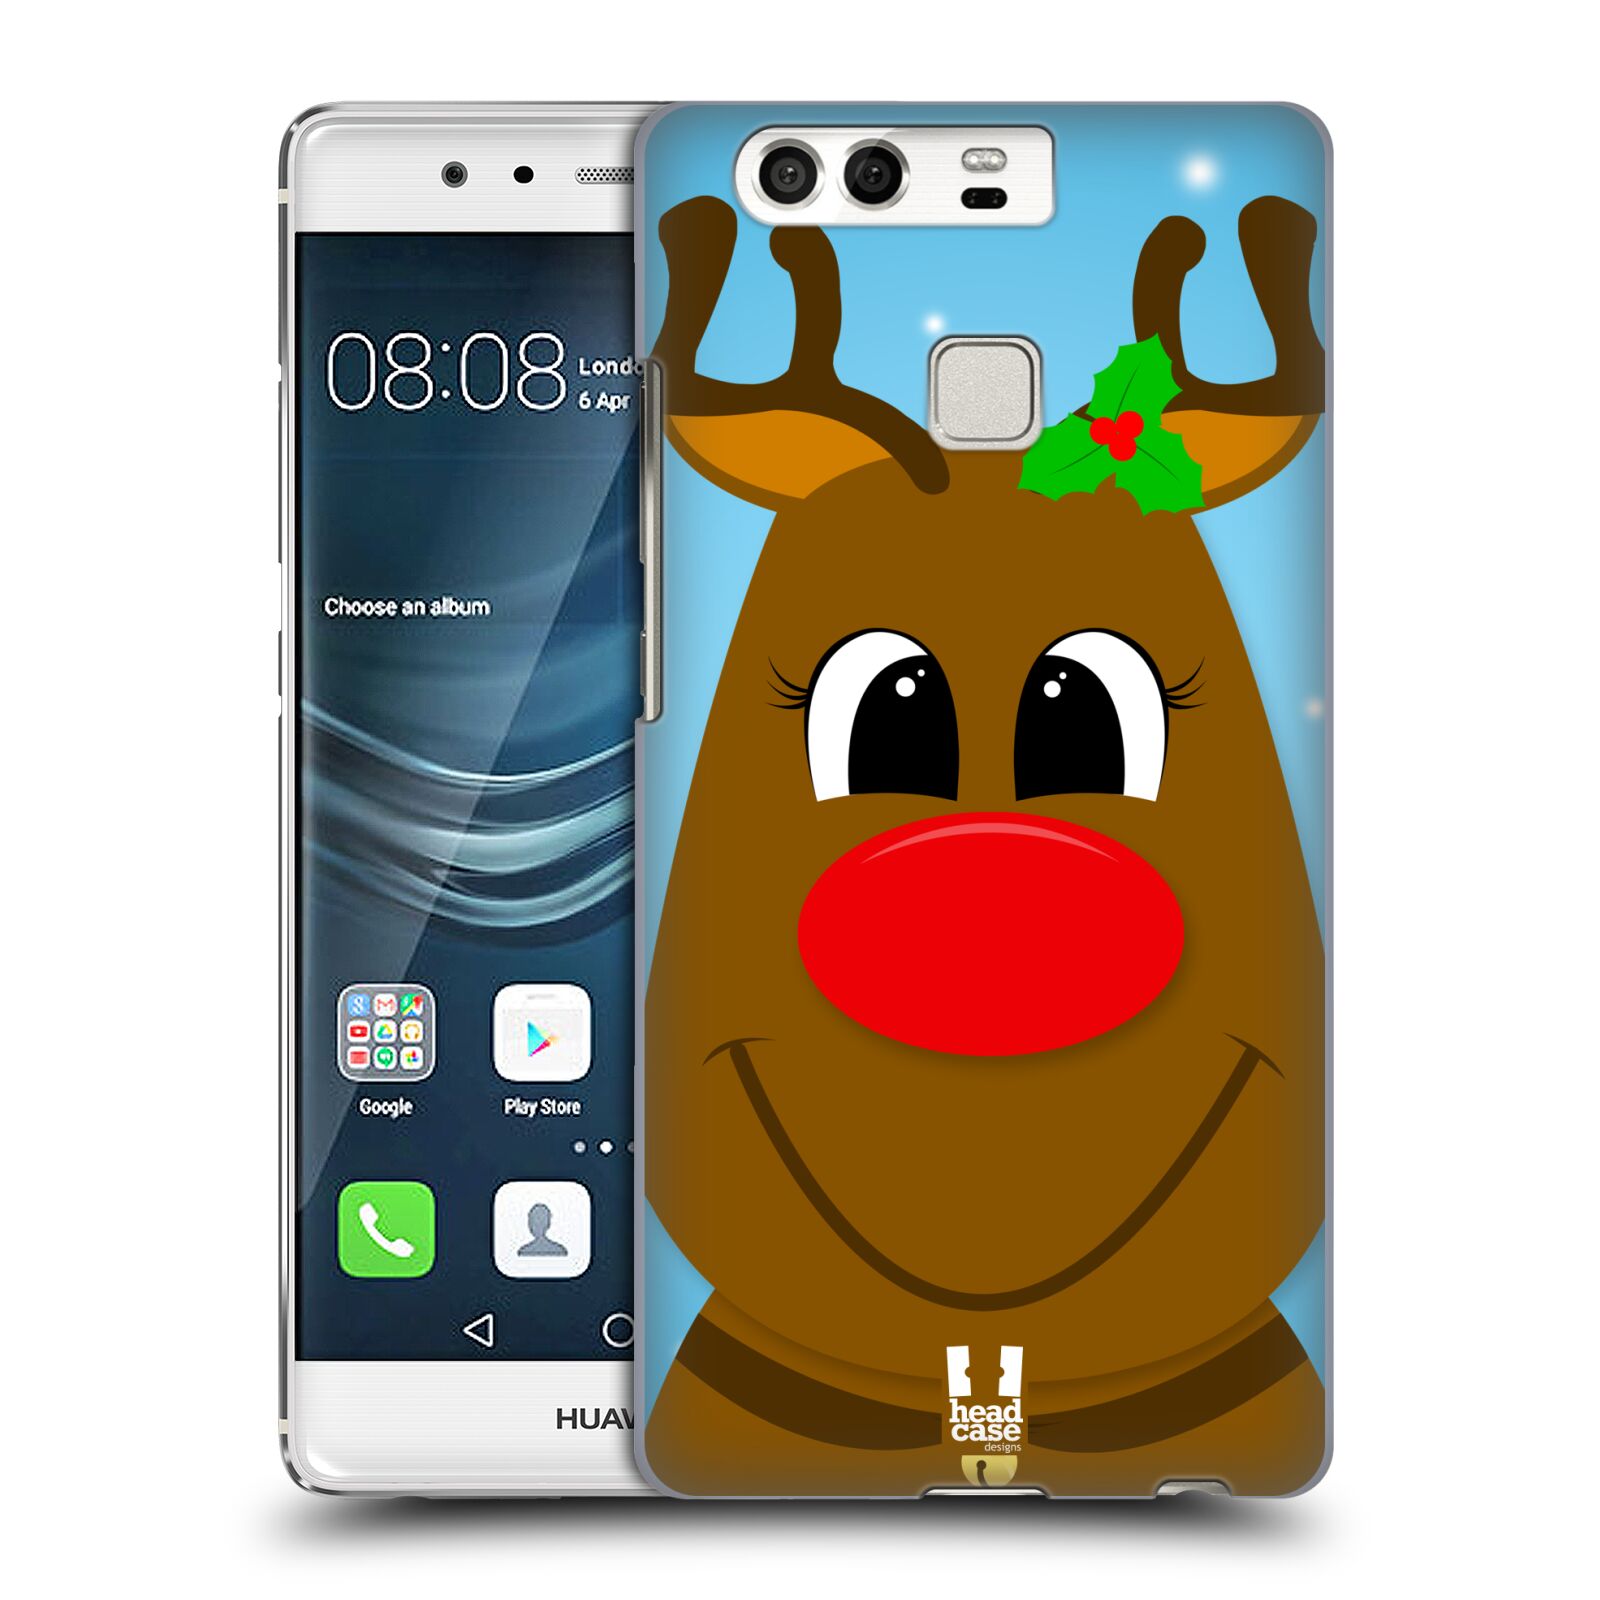 HEAD CASE plastový obal na mobil Huawei P9 / P9 DUAL SIM vzor Vánoční tváře kreslené SOB RUDOLF